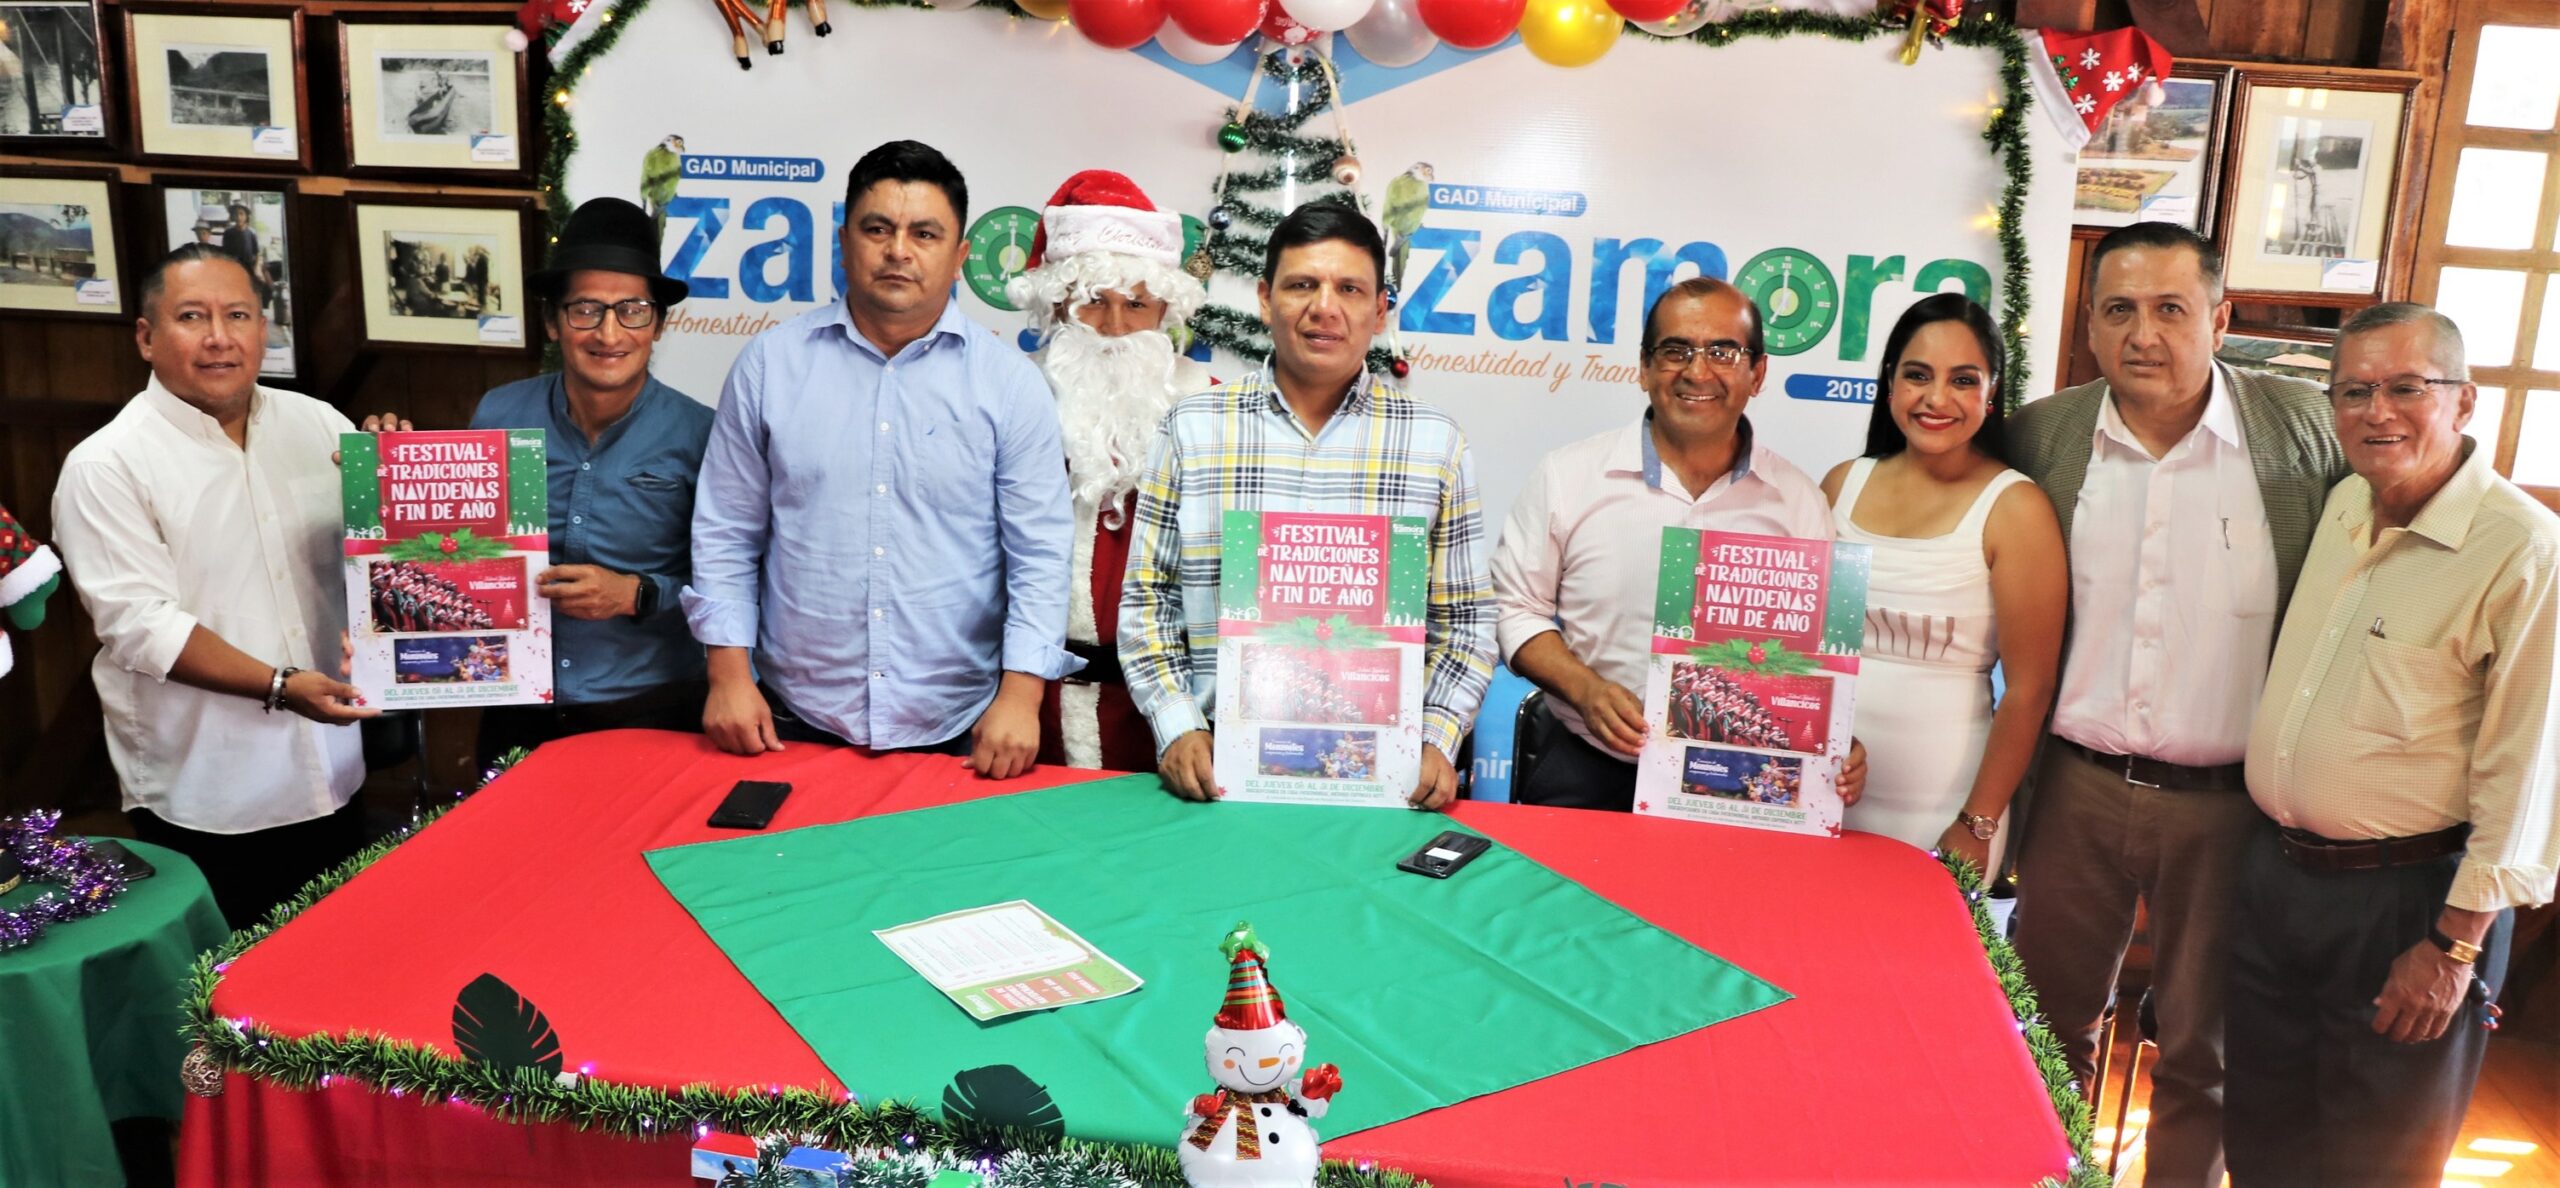 En este momento estás viendo GAD Zamora lanzó festival de tradiciones navideñas y fin de año